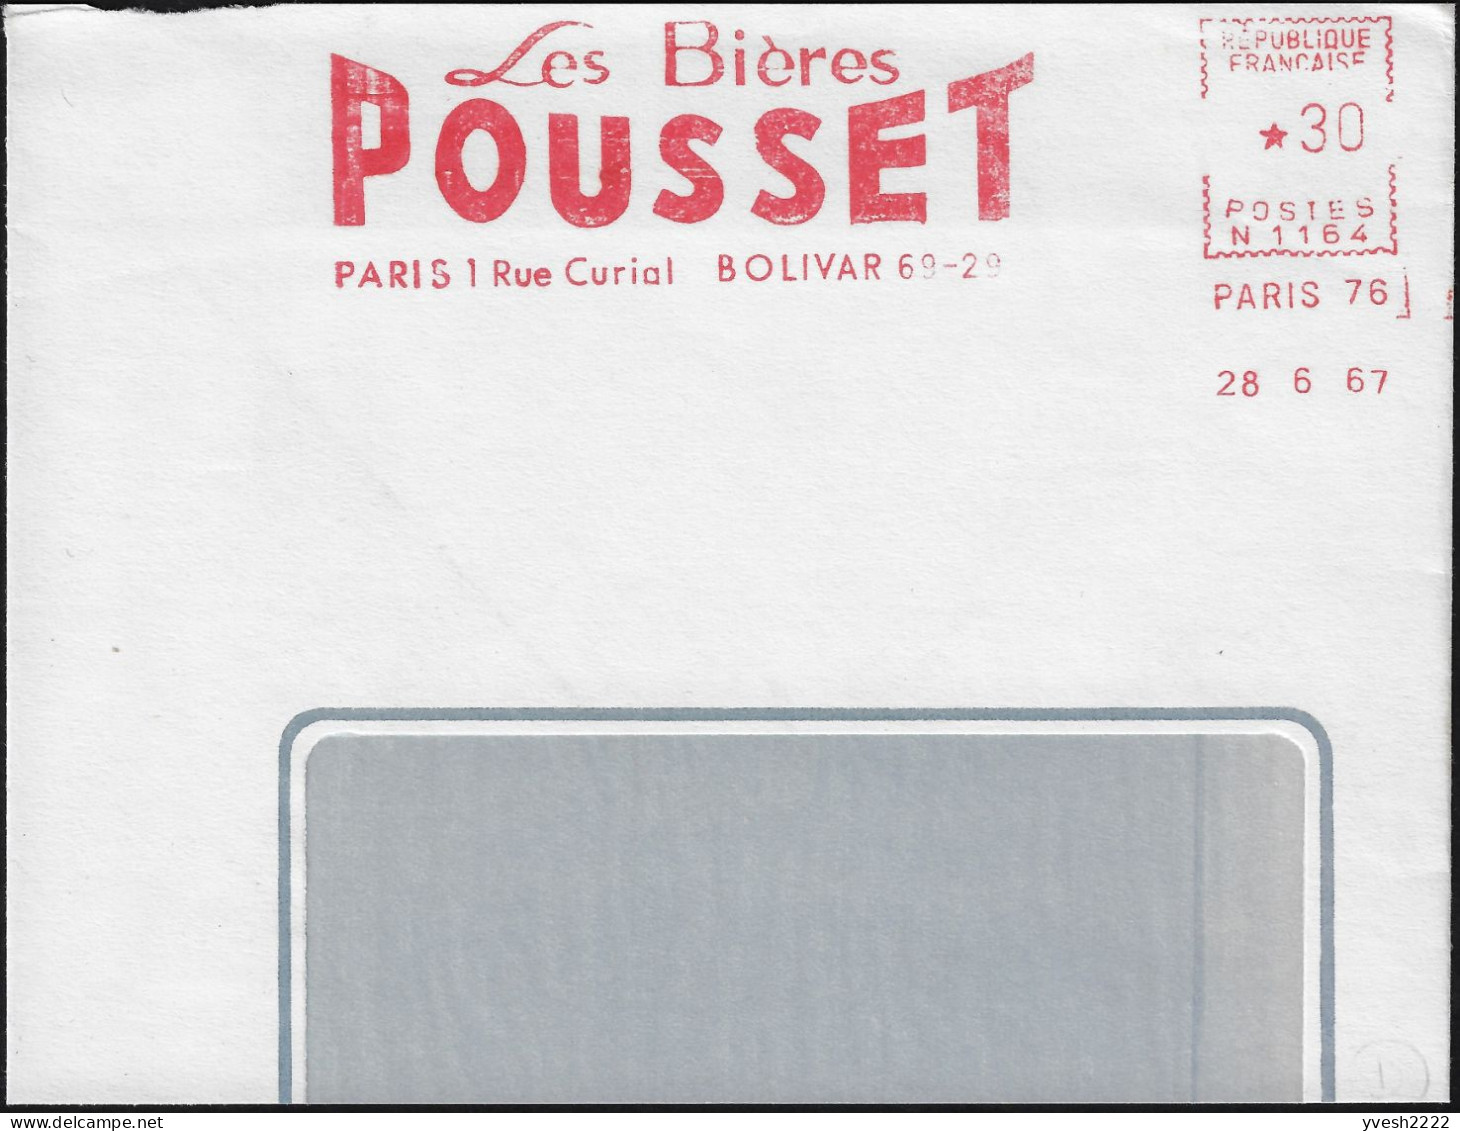 France 1967. Empreinte De Machine à Affranchir, EMA. Les Bières Pousset, Paris 1. Bolivar 69-29 - Beers